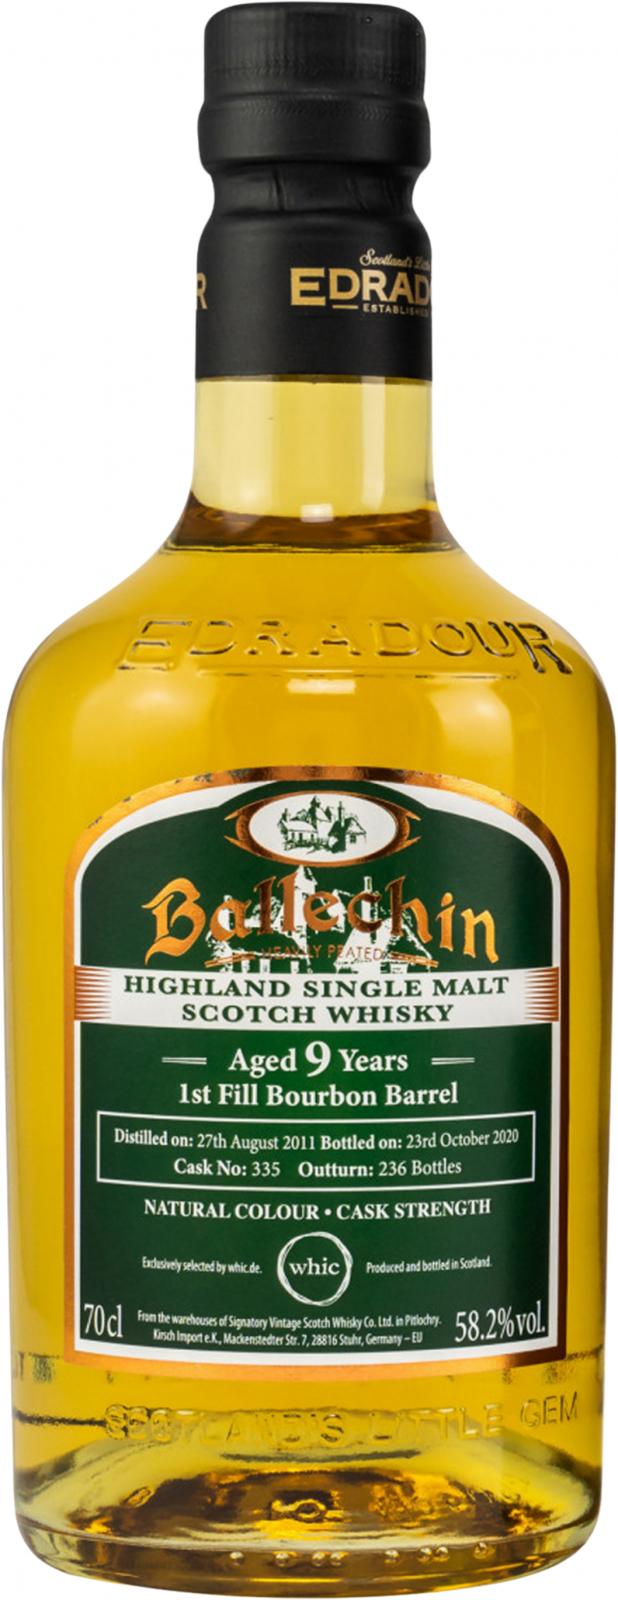 Ballechin 2011 1st Fill Bourbon Barrel #335 Whic.de 58.2% 700ml